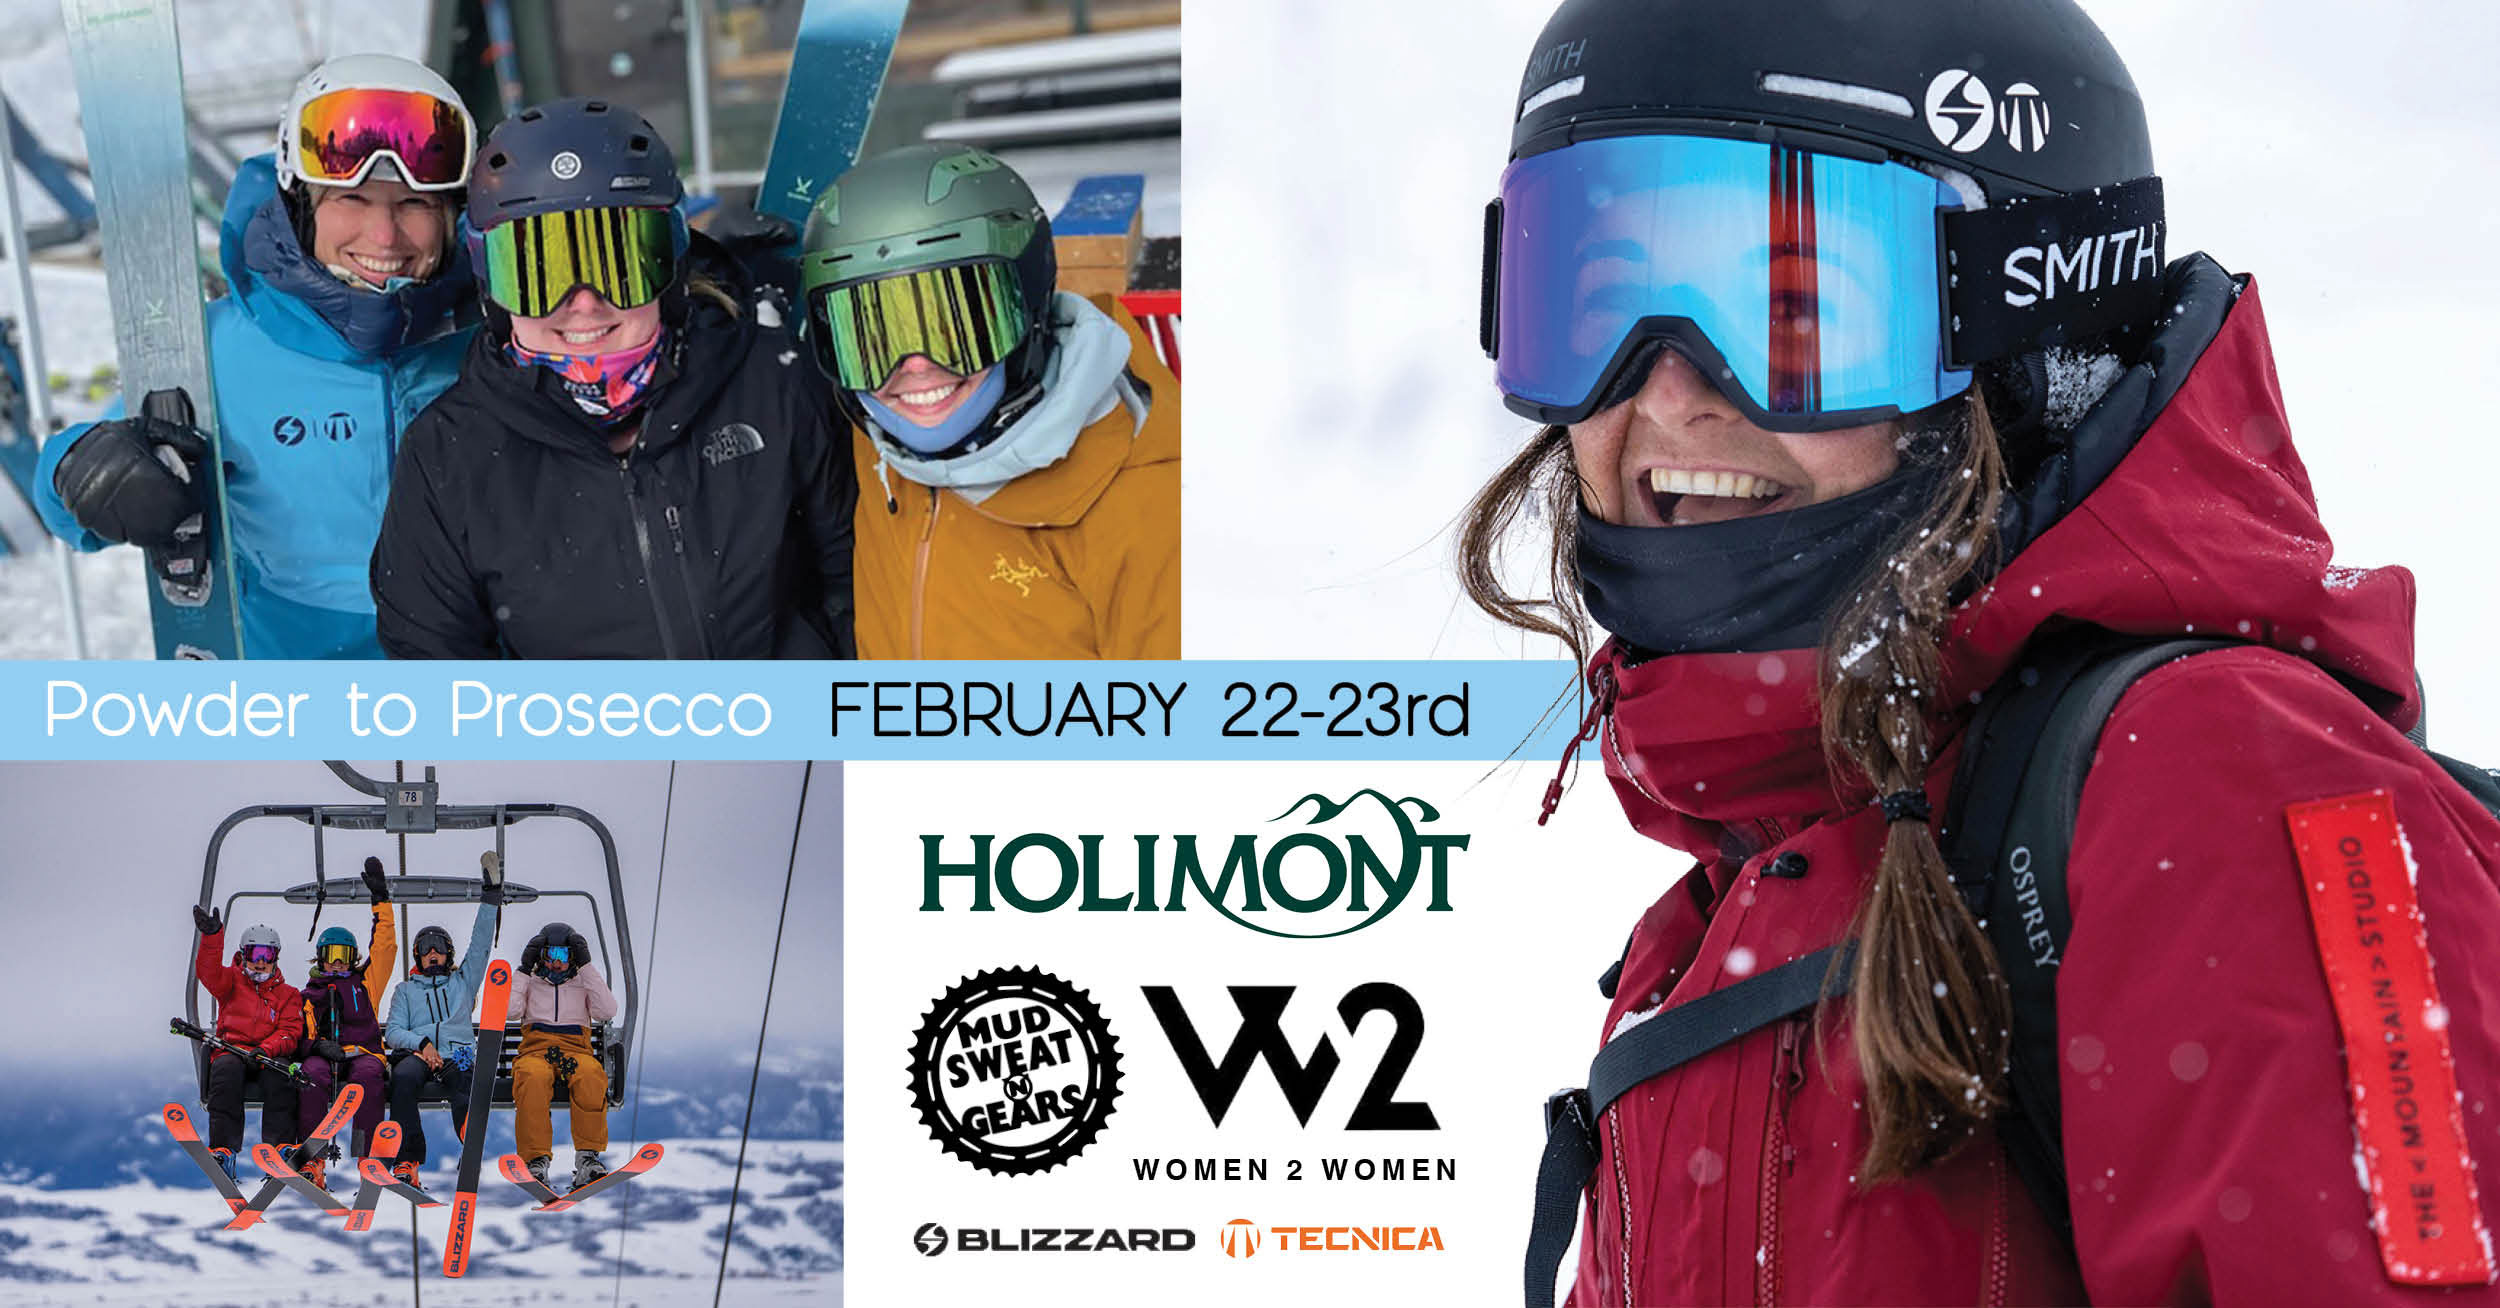 Women 2 Women ski event at Holimont Ski Resort